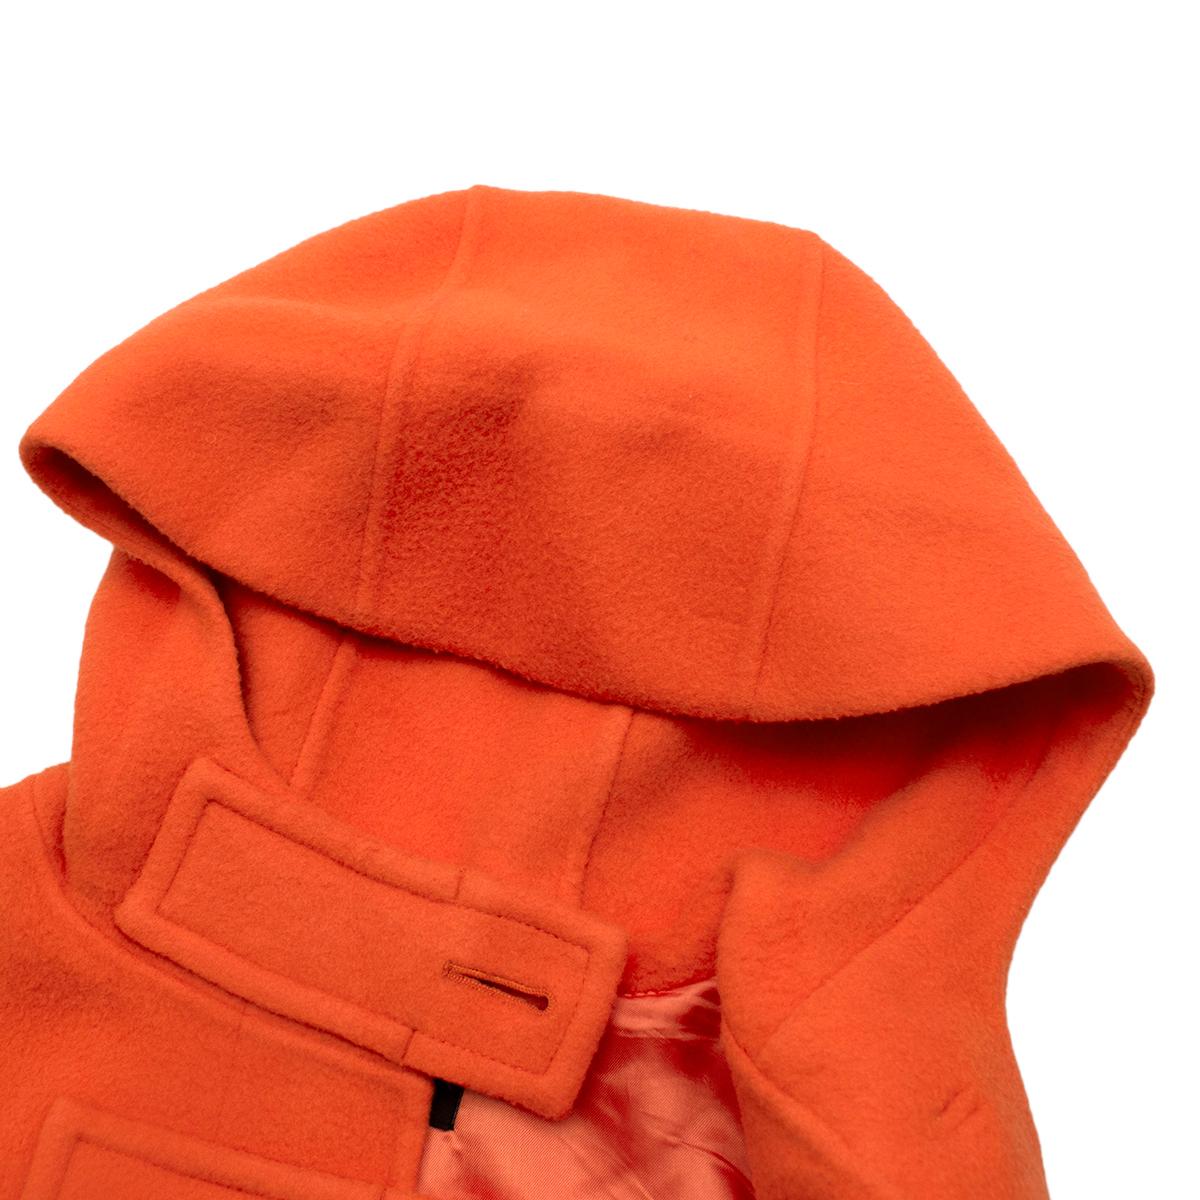 orange duffle coat